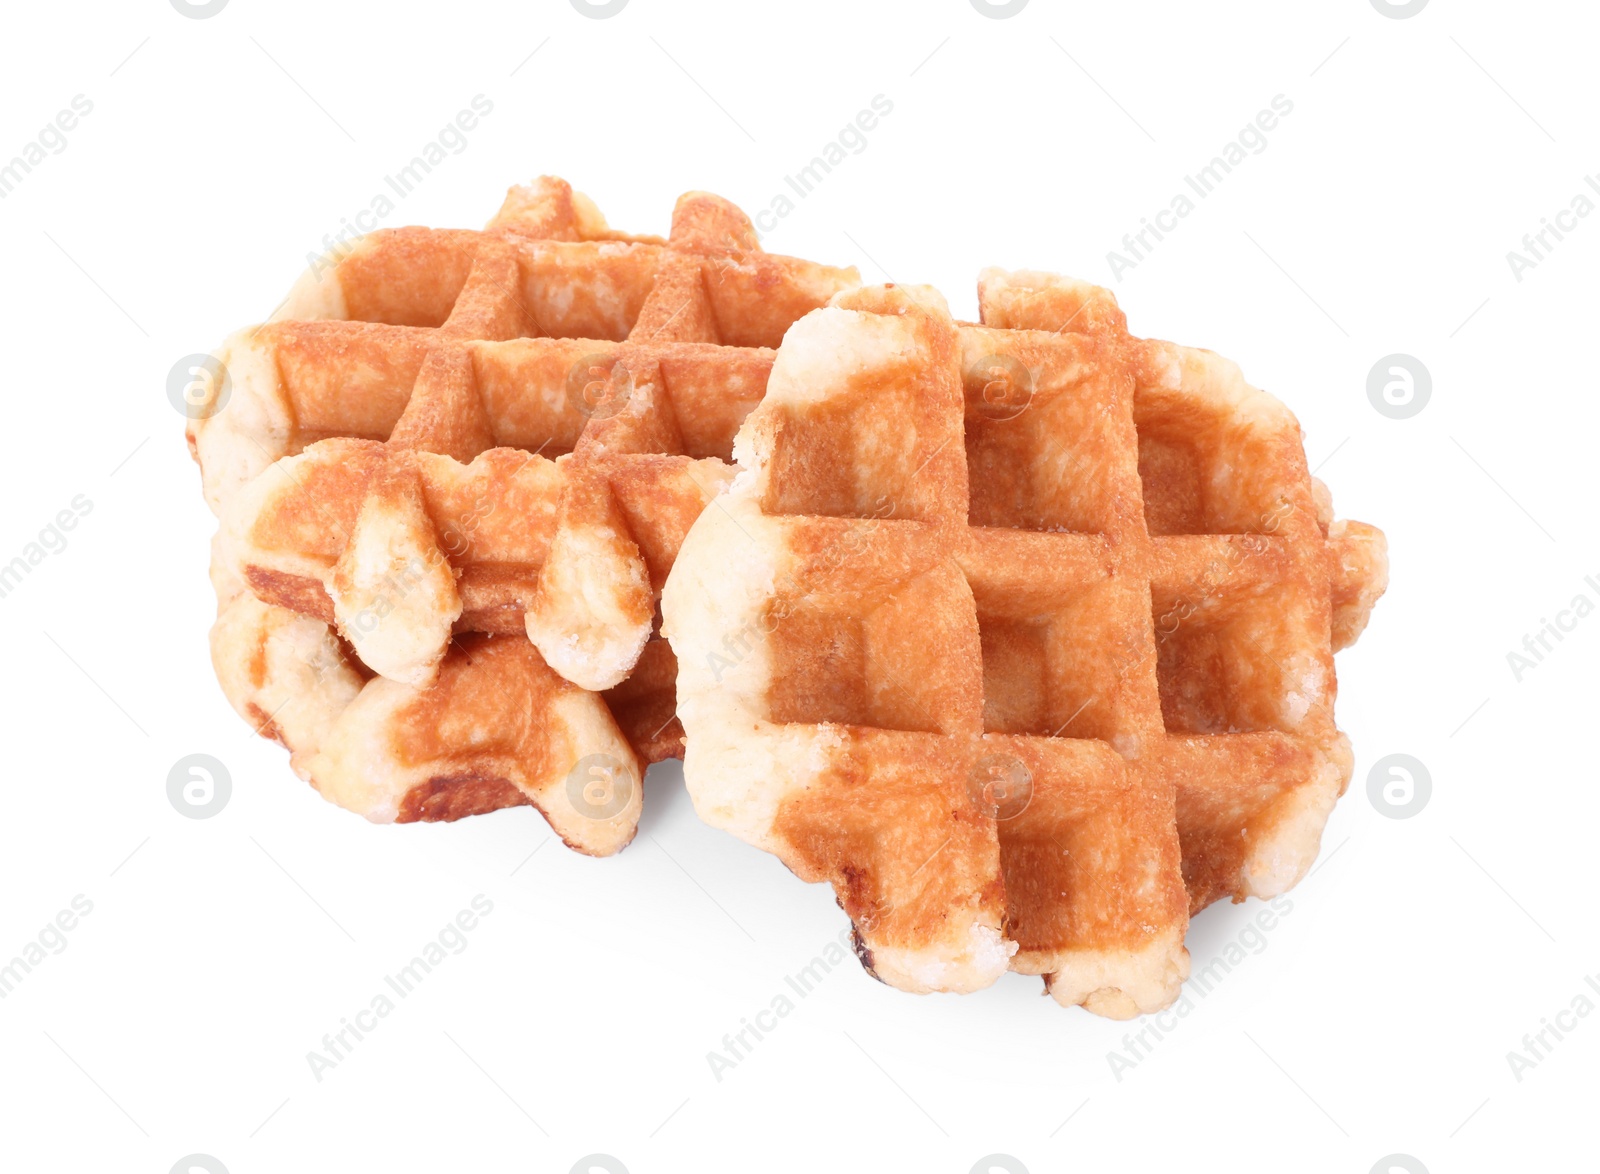 Photo of Many delicious Belgian waffles isolated on white